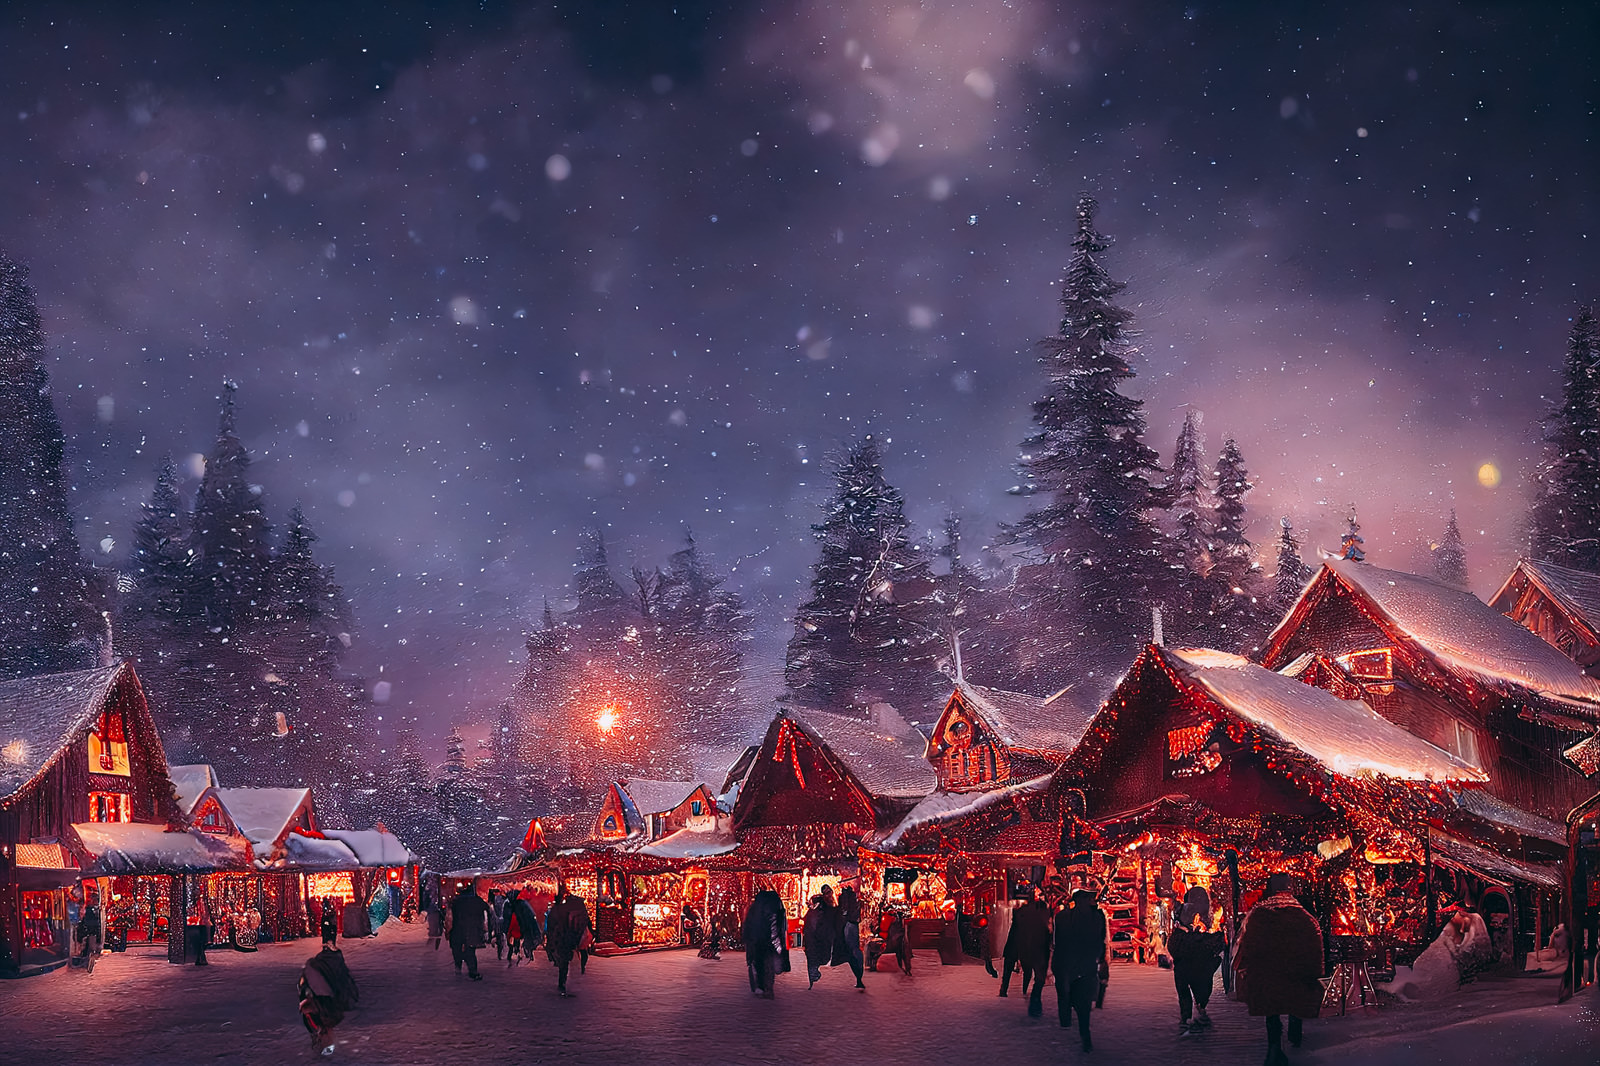 「クリスマスショップのイルミネーションと舞い散る雪」の写真